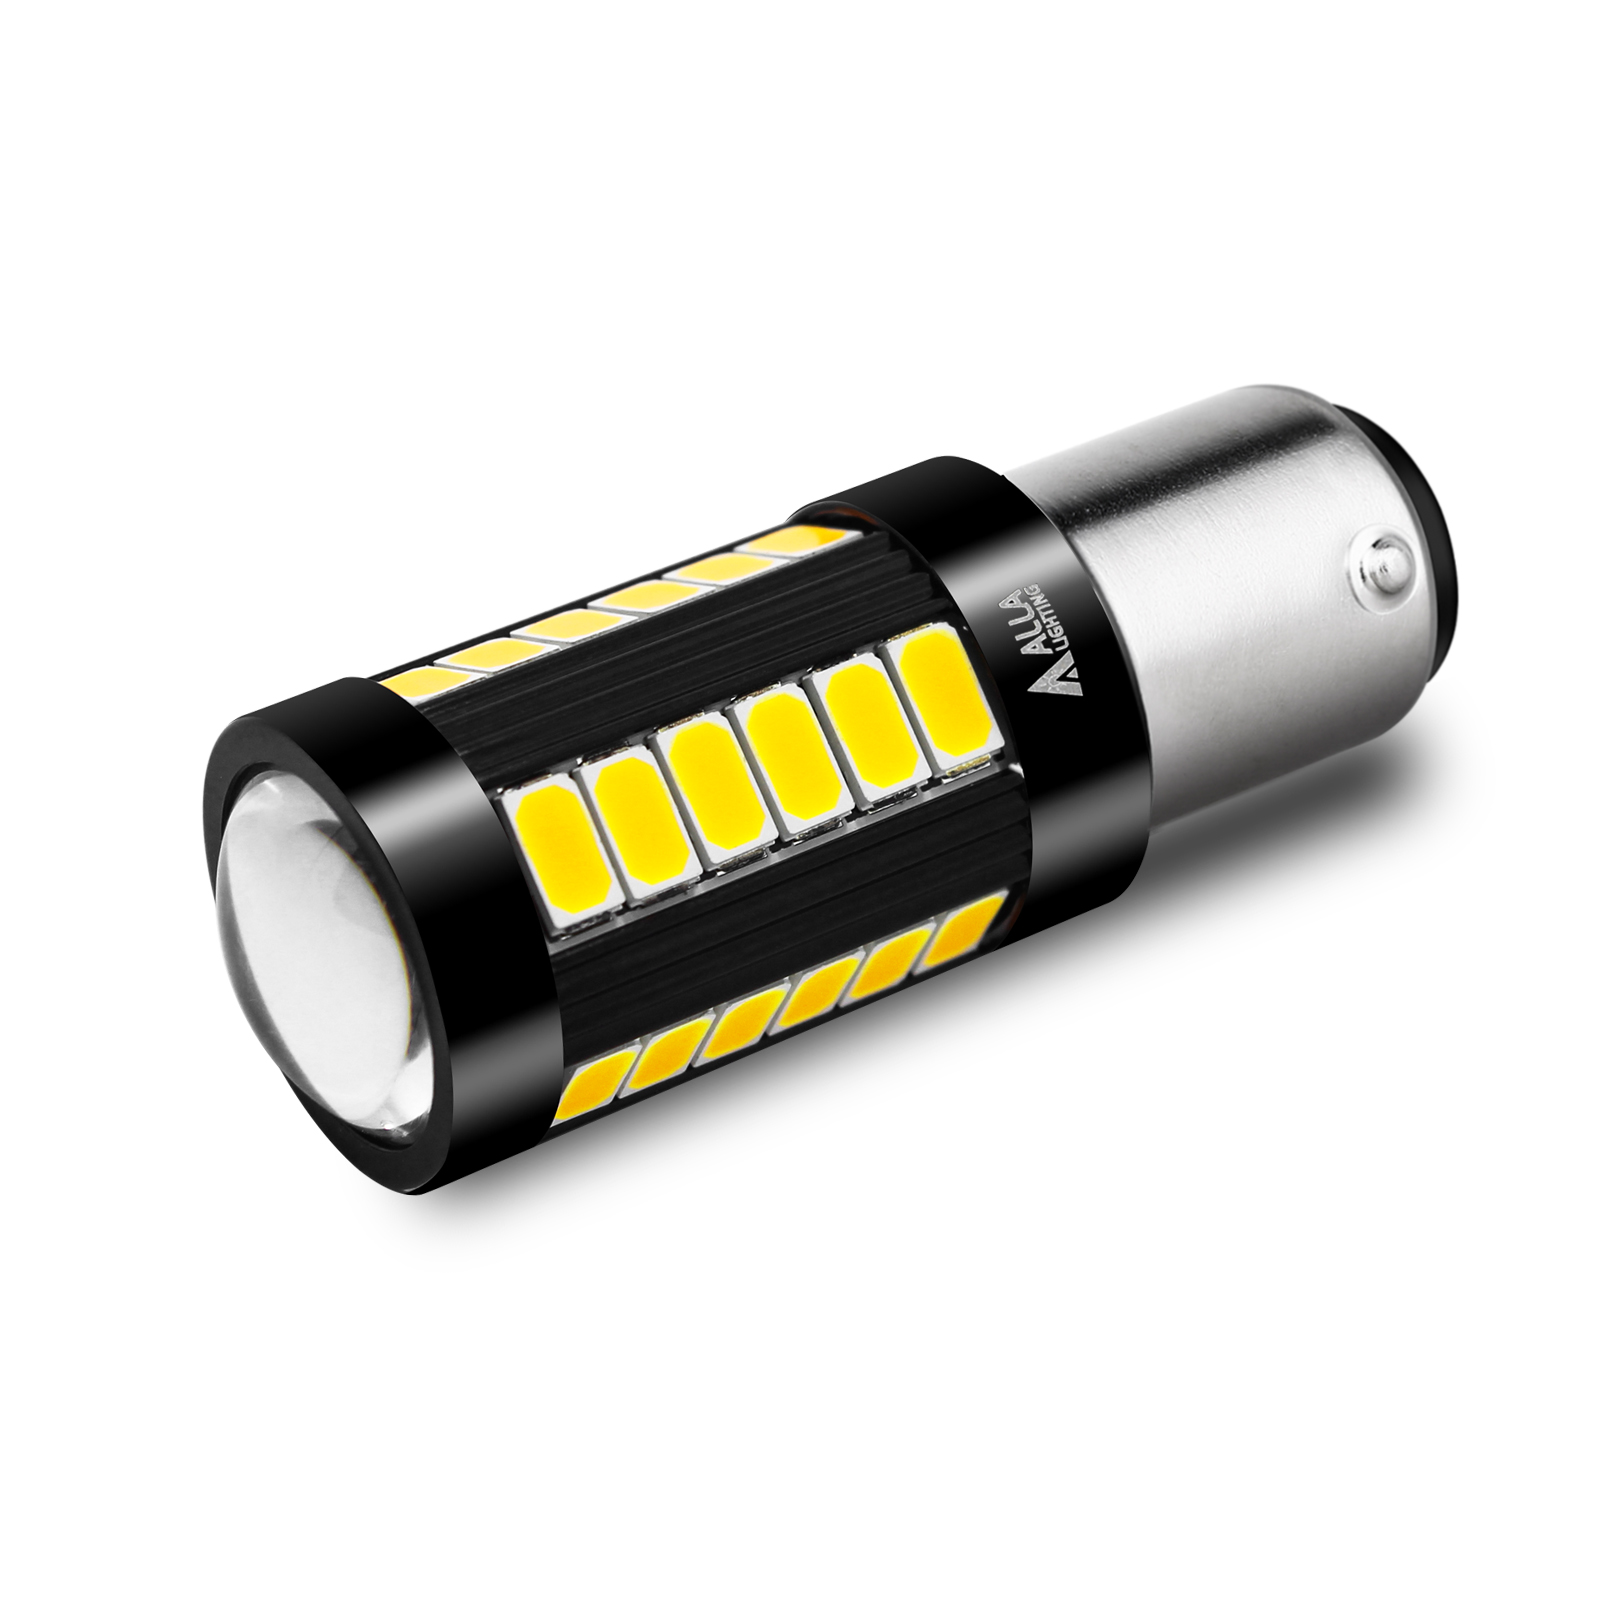 Automotive LED Front Side Marker Light for cars, trucks